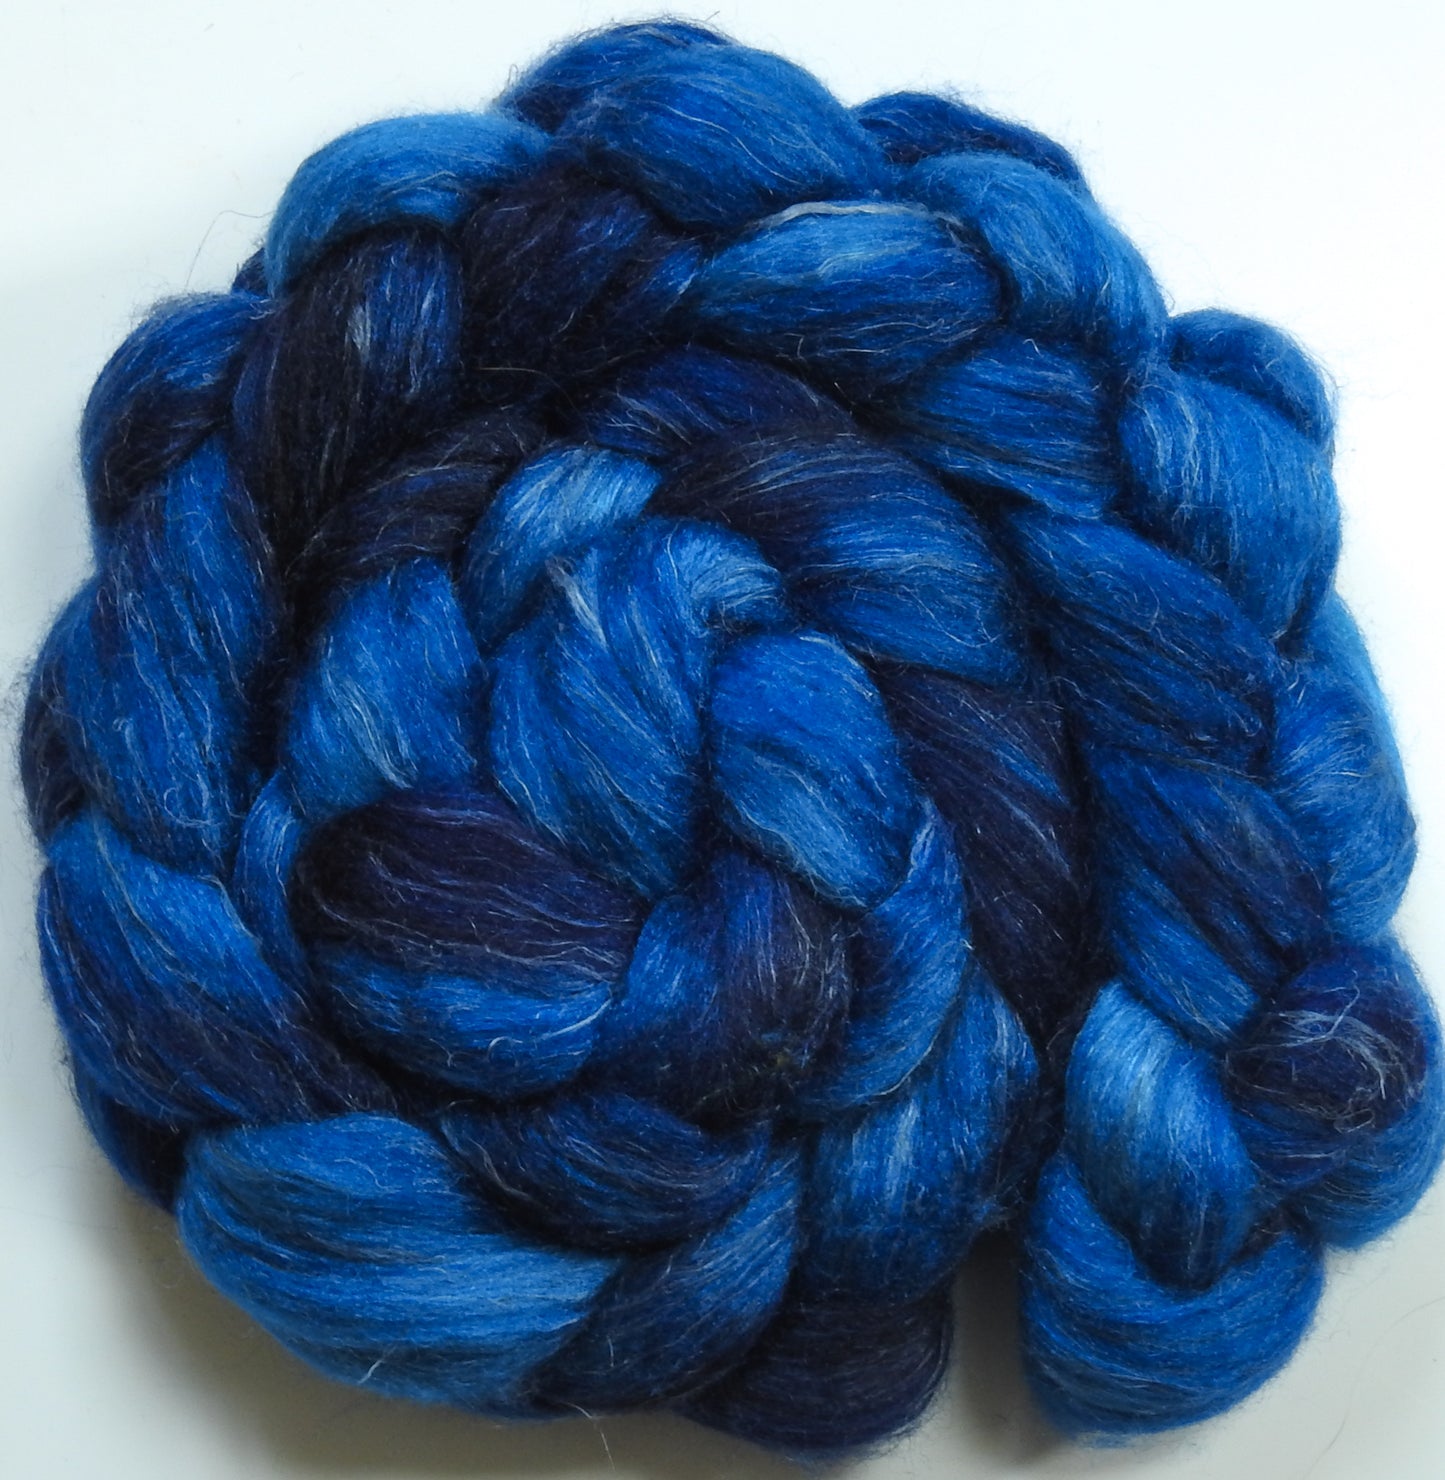 Blueblood (5.6 oz) - Batt in a Braid #3 - Polwarth/ Tussah Silk/ Flax (40/40/20)